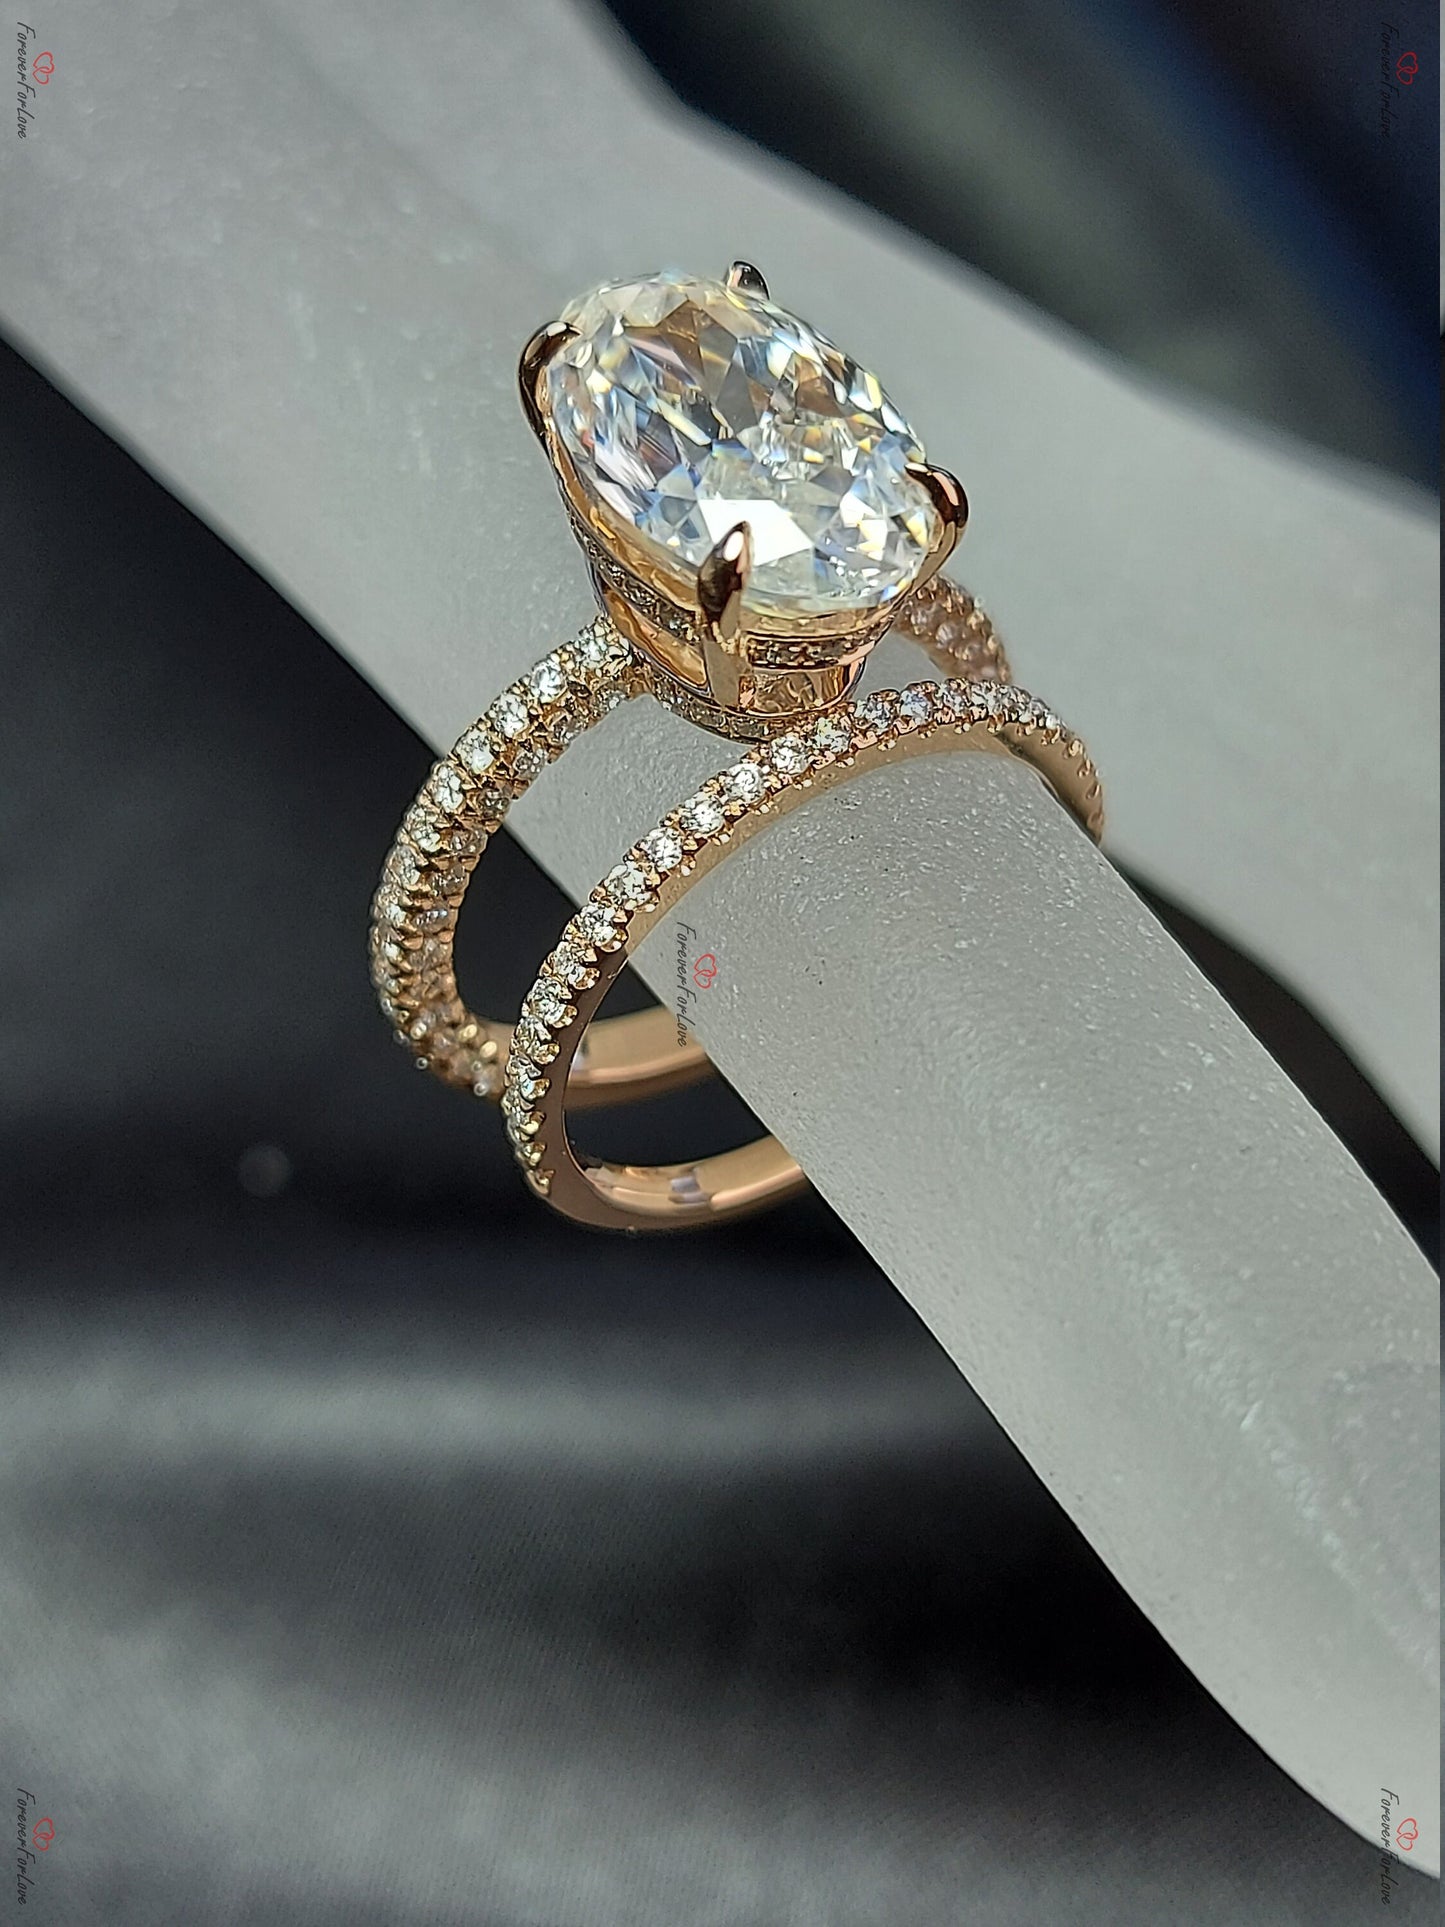 Blake Lively ring Moissanite Engagement Ring oval cut 14k rose gold diamond ring 6.5Ct Moissanite bridal set.